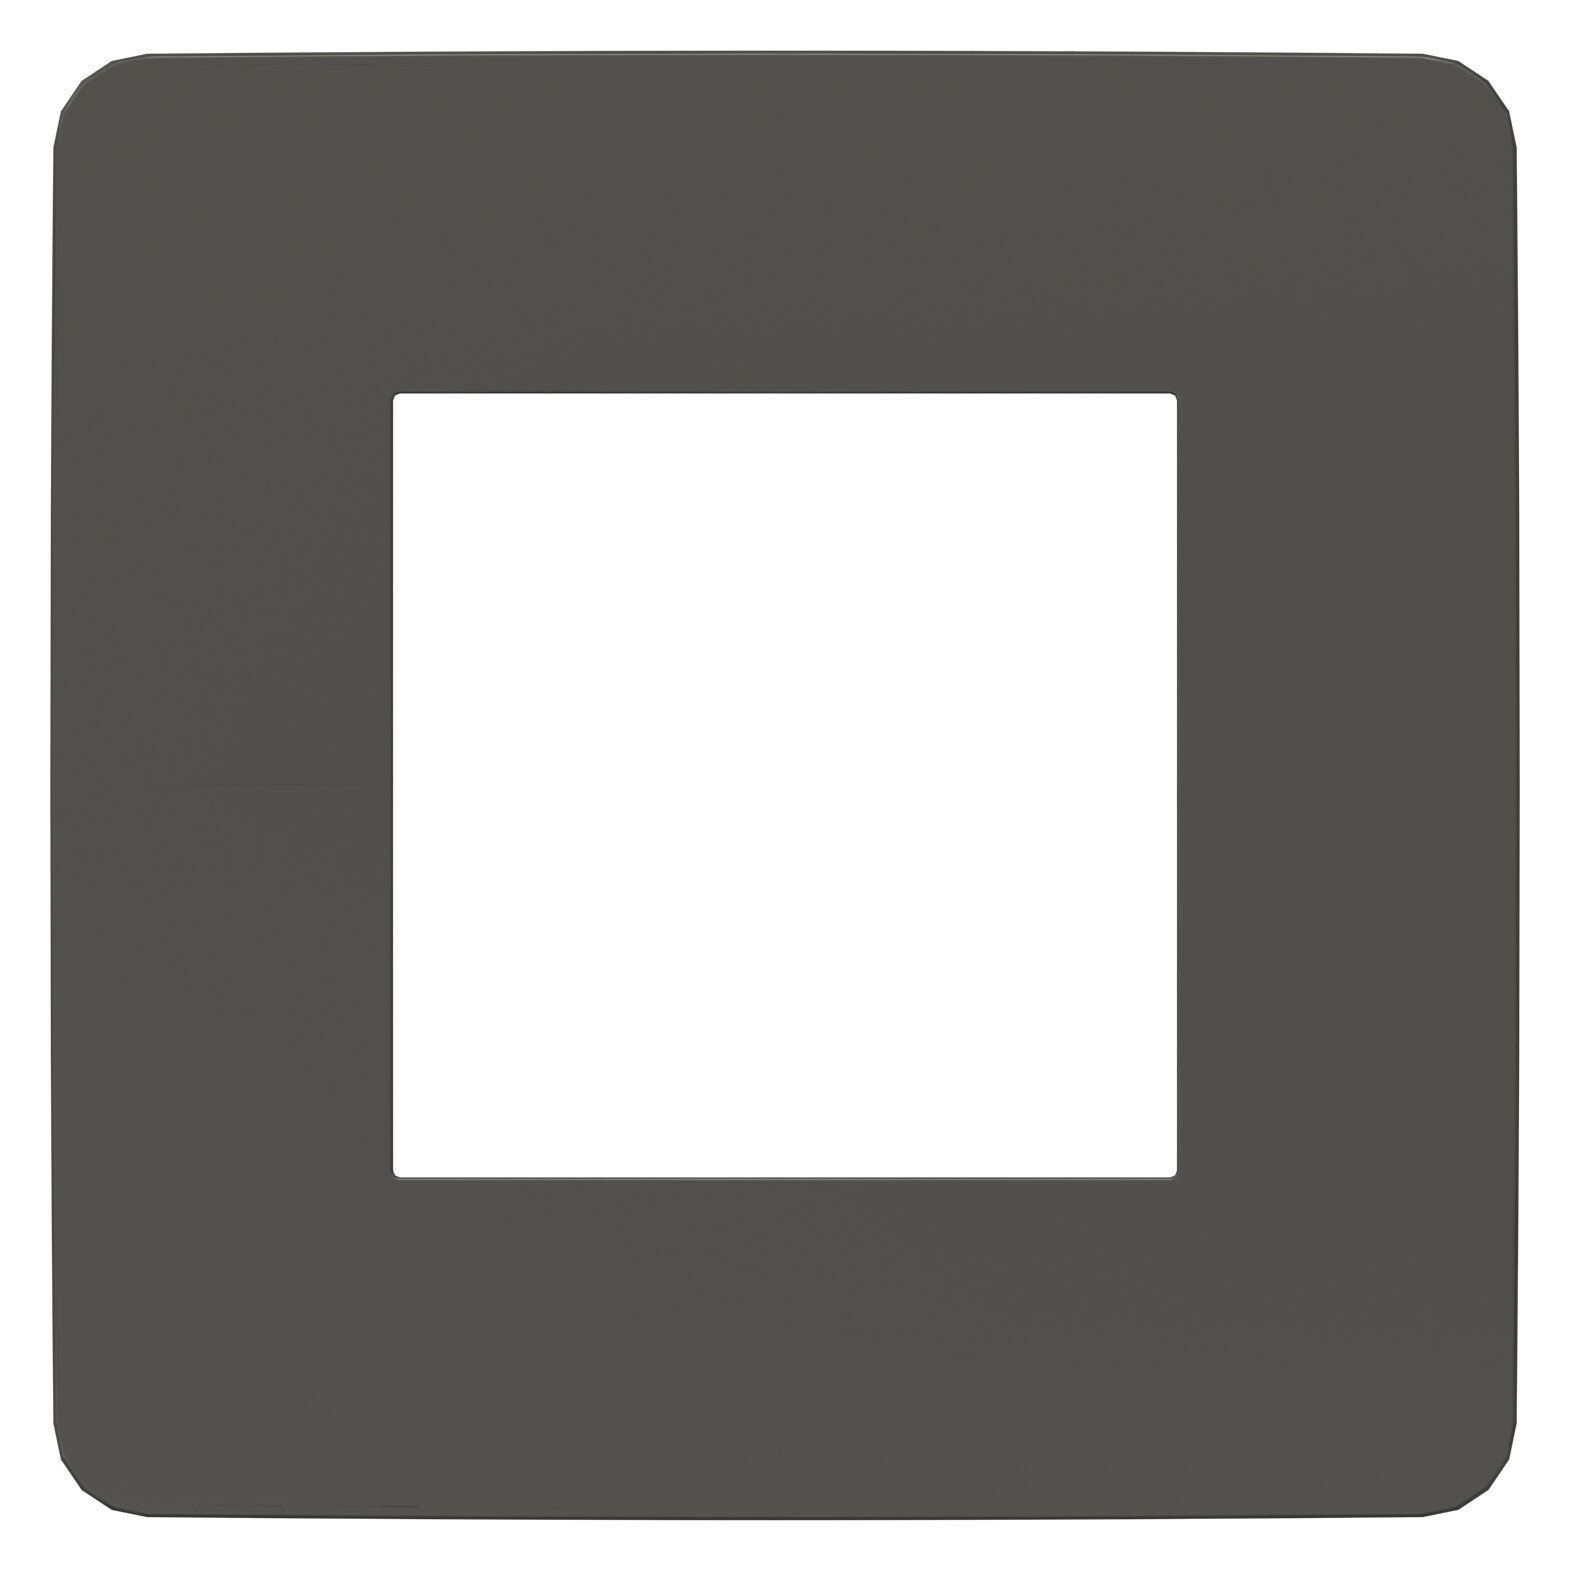 Рамка 1м Unica Studio Color дымчато-серый/белый встроенный монтаж (Schneider Electric), арт. NU280221